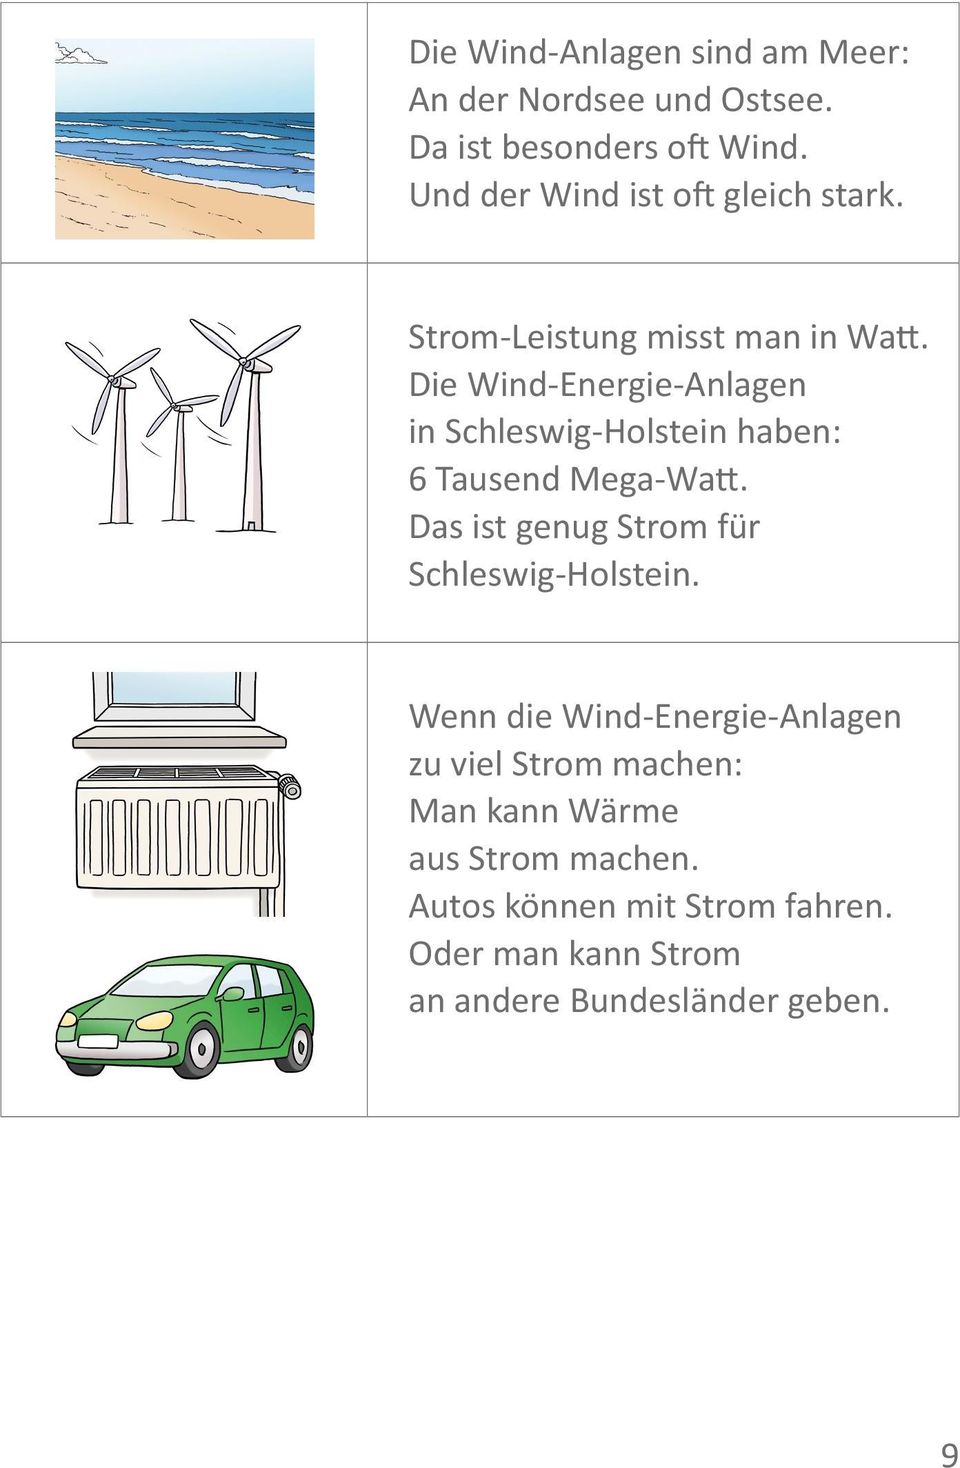 Die Wind-Energie-Anlagen in Schleswig-Holstein haben: 6 Tausend Mega-Watt.